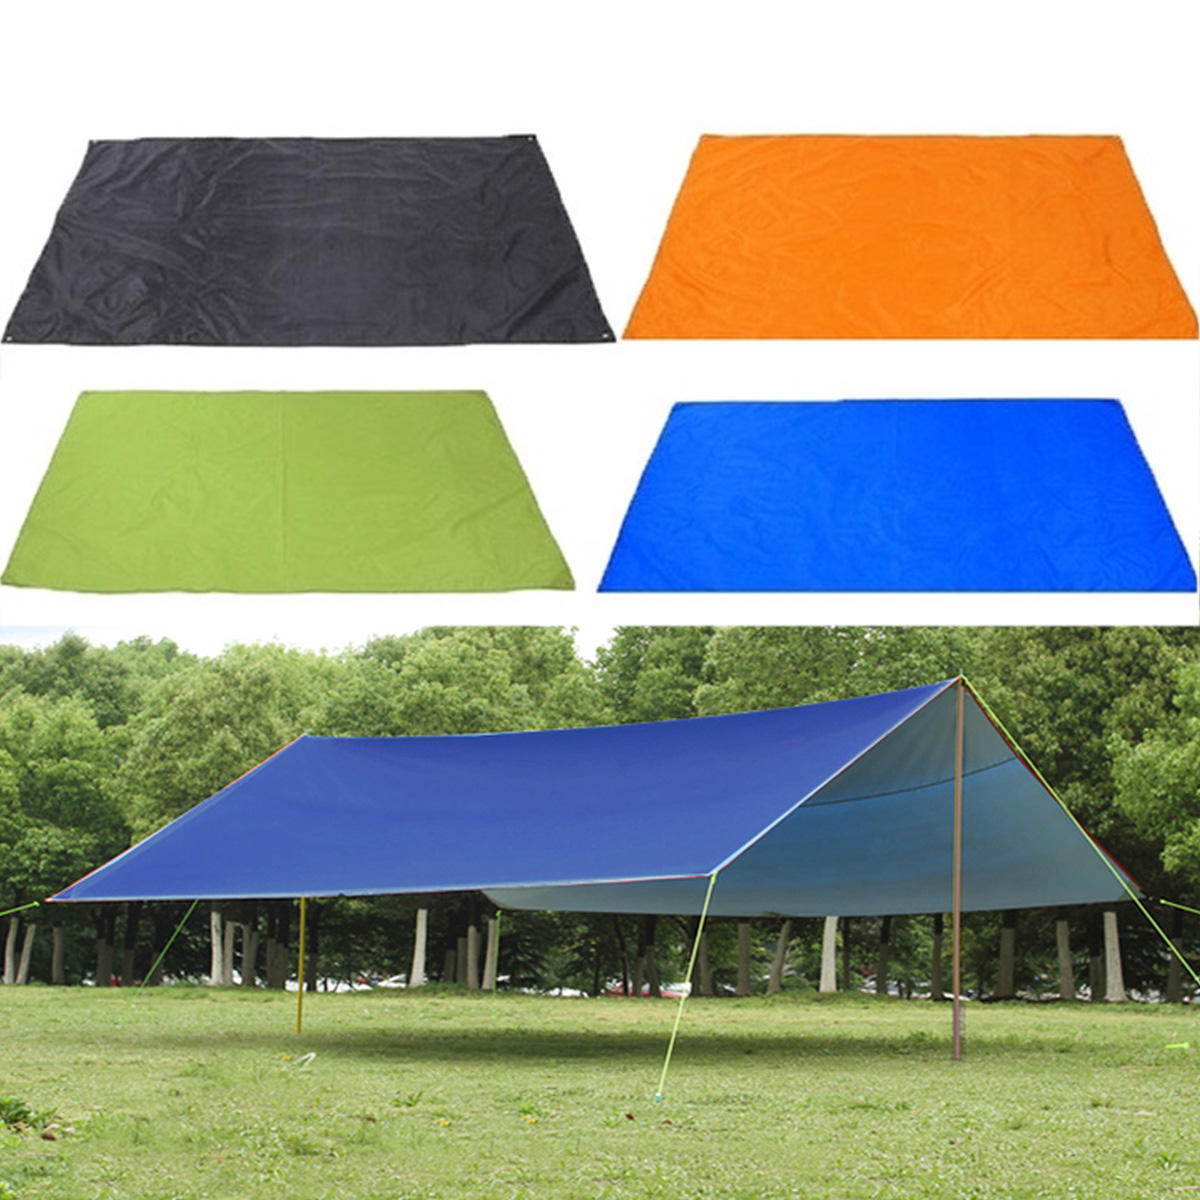 Tente de camping imperméable de 210x150cm pour l'extérieur, auvent pour le soleil et la pluie, tapis de pique-nique